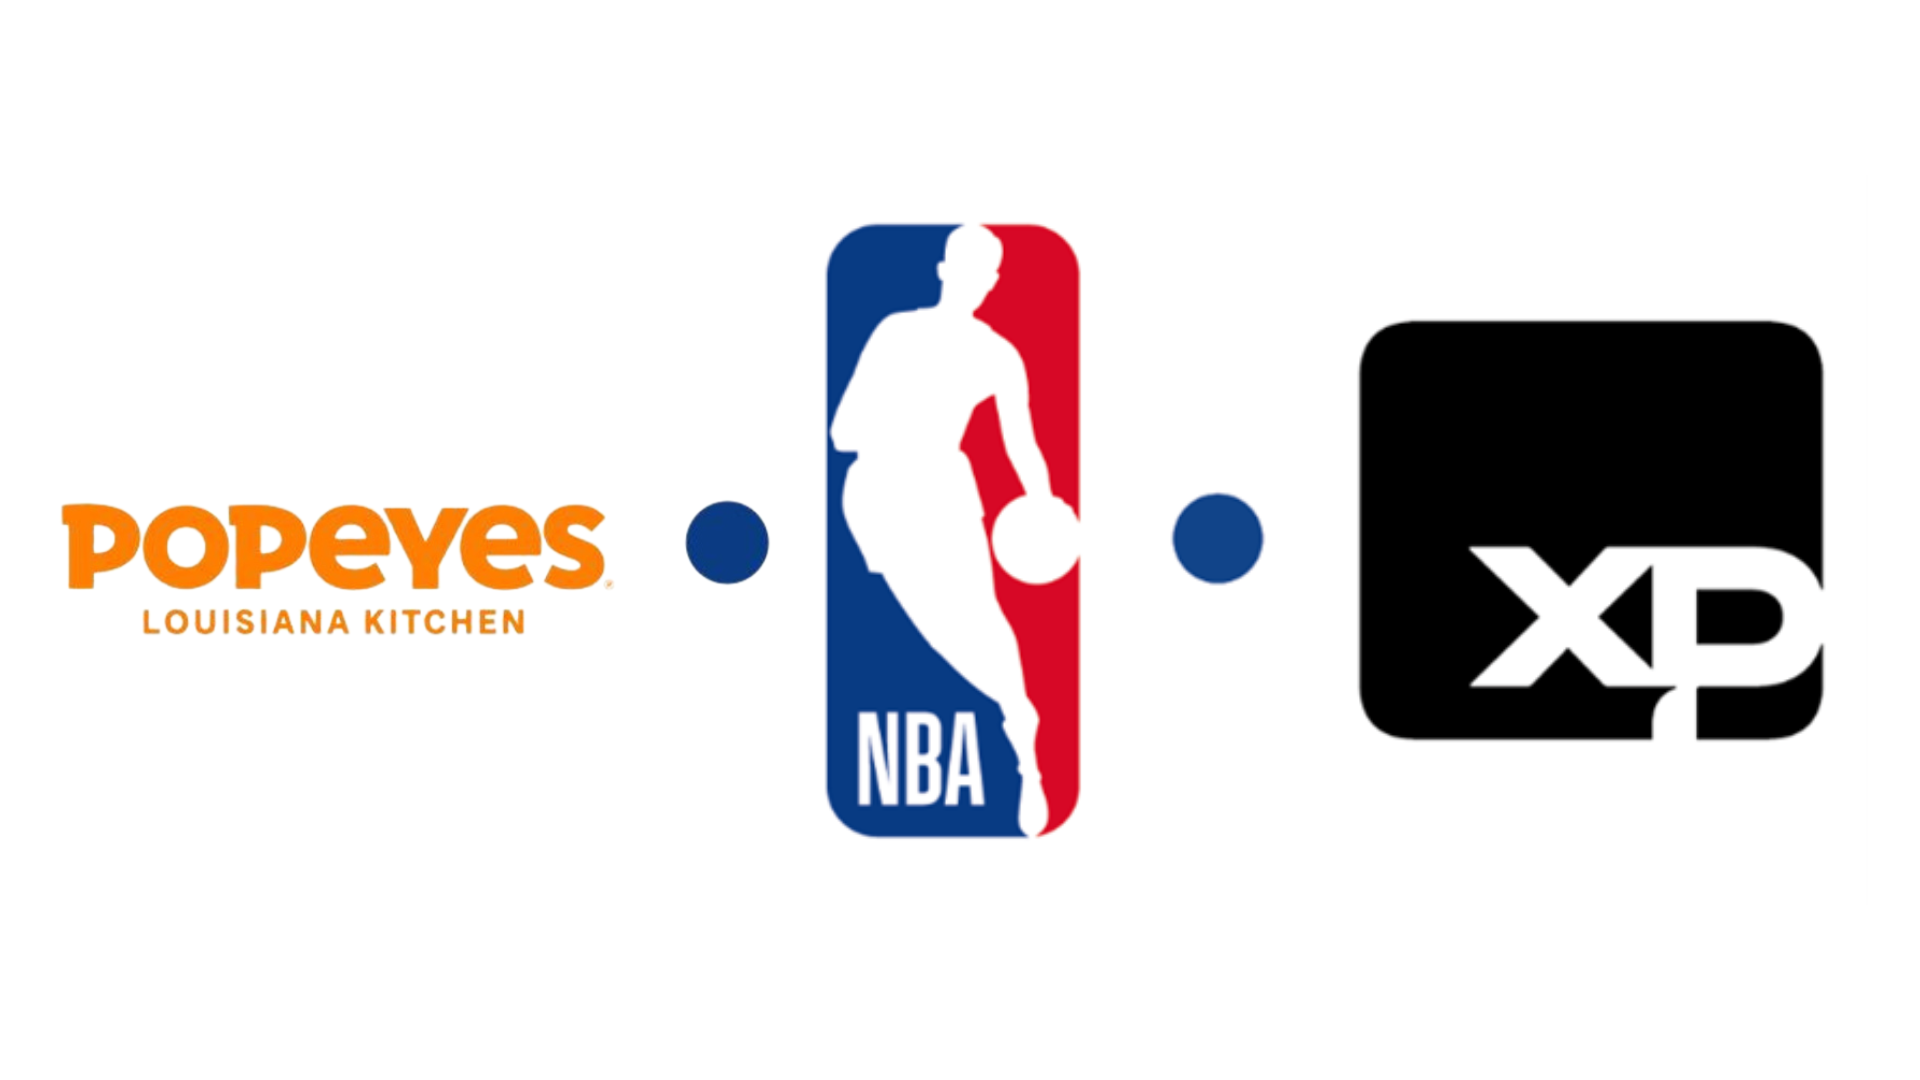 NBA renova parceria com Popeyes e anuncia XP como primeira marca financeira patrocinadora 